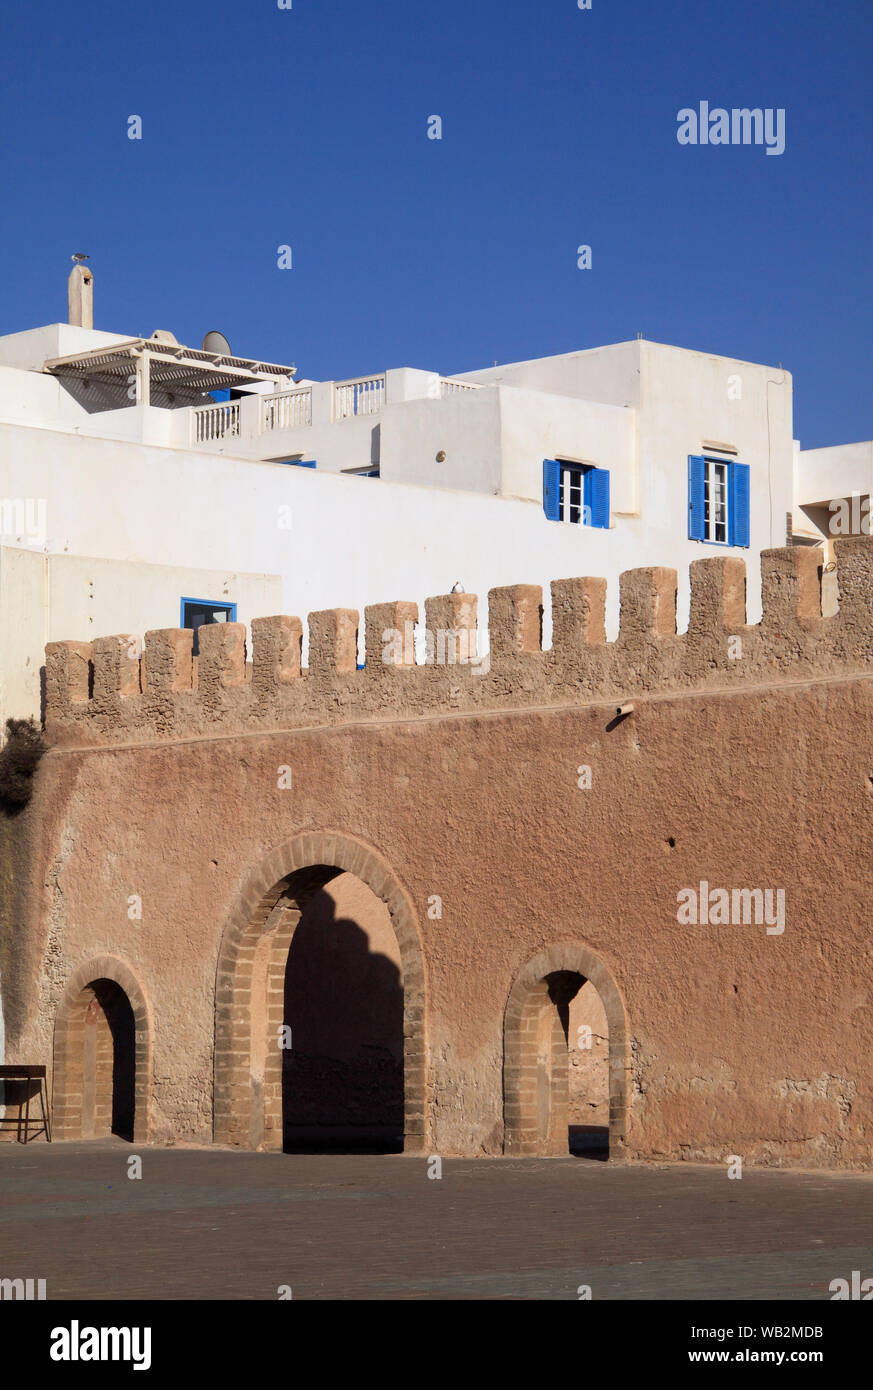 Il Marocco quartiere di Marrakech, Essaouira UNESCO World Heritage Site - cinta muraria ed edifici imbiancati nel centro storico della medina. Foto Stock